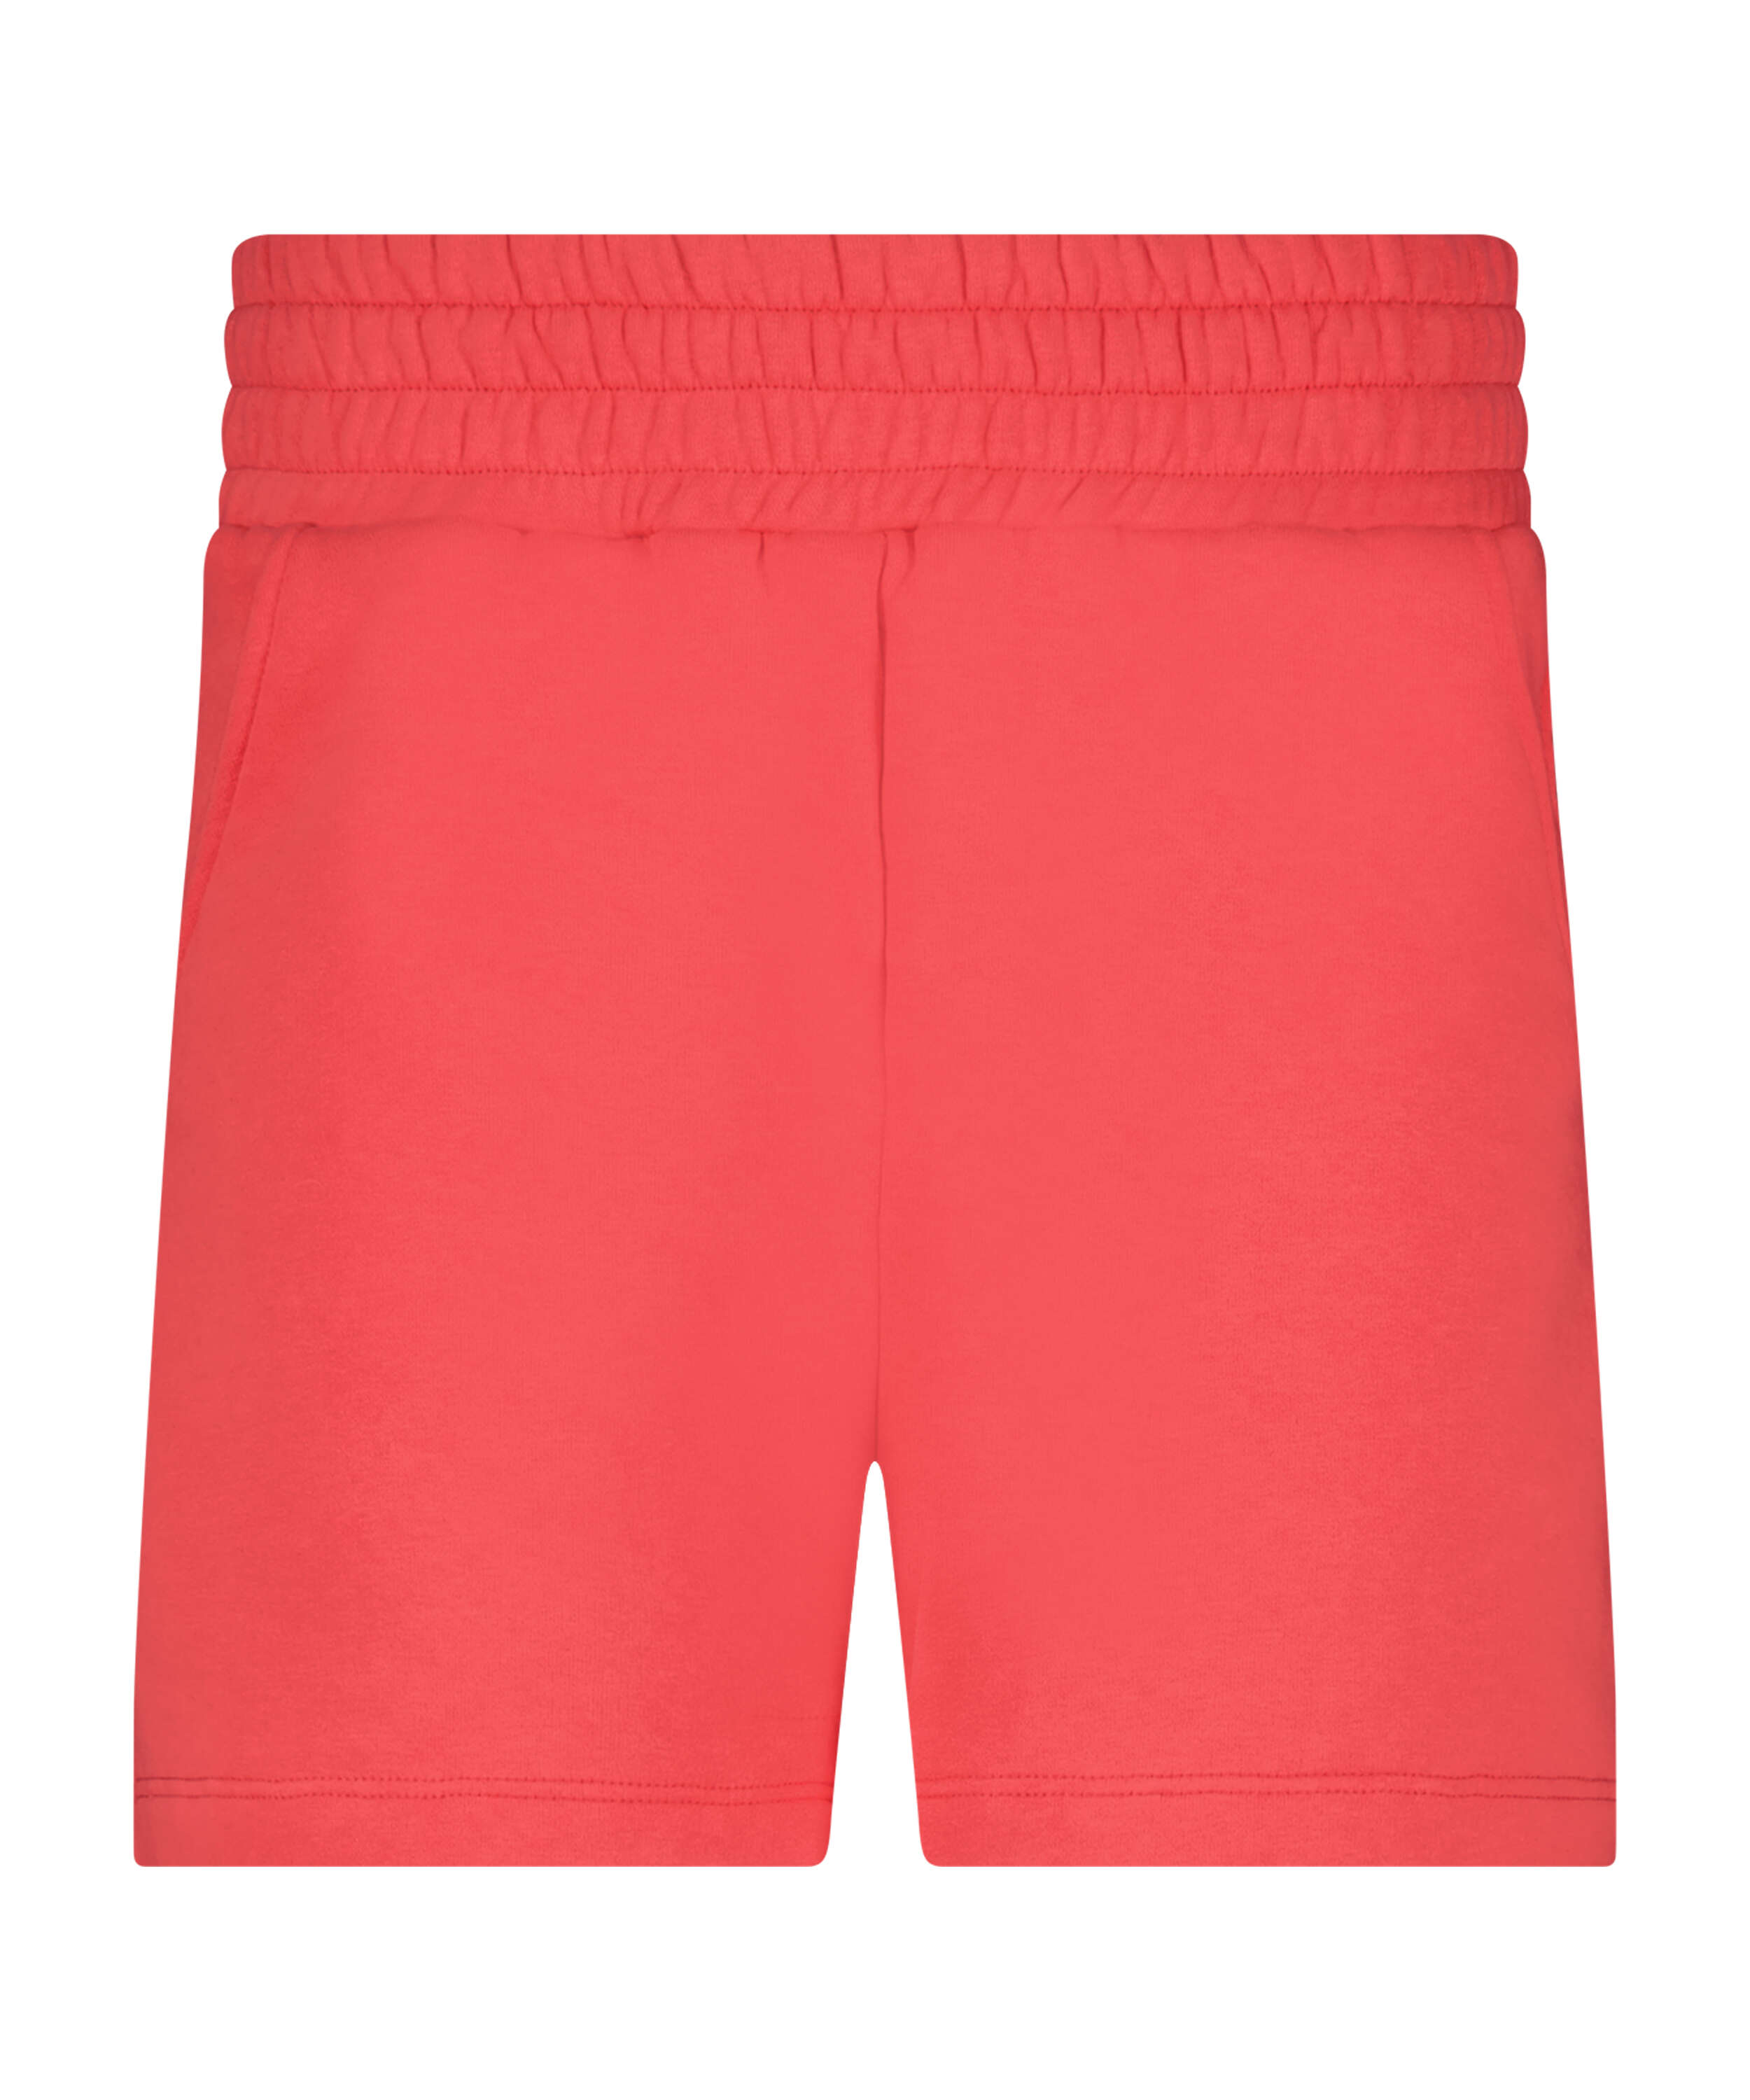 Shorts Sweat Lounge, Pink, main